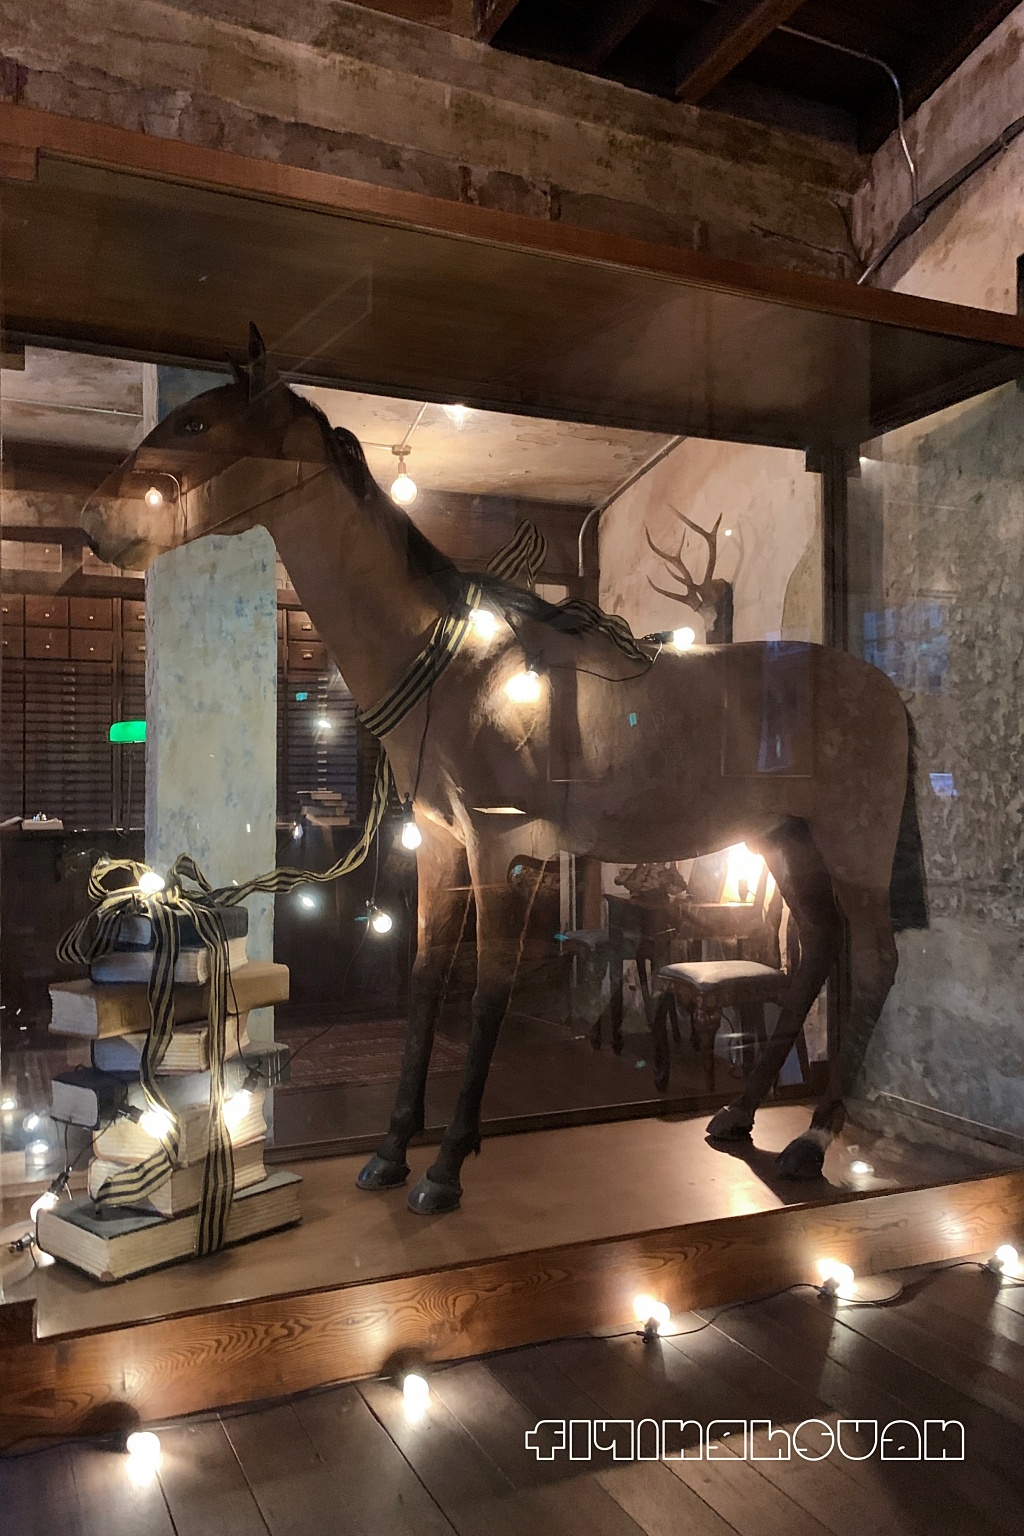 泰國曼谷｜The Mustang Blu，19世紀銀行改建，曼谷老宅建築餐廳的咖啡館與飯店 @飛天璇的口袋